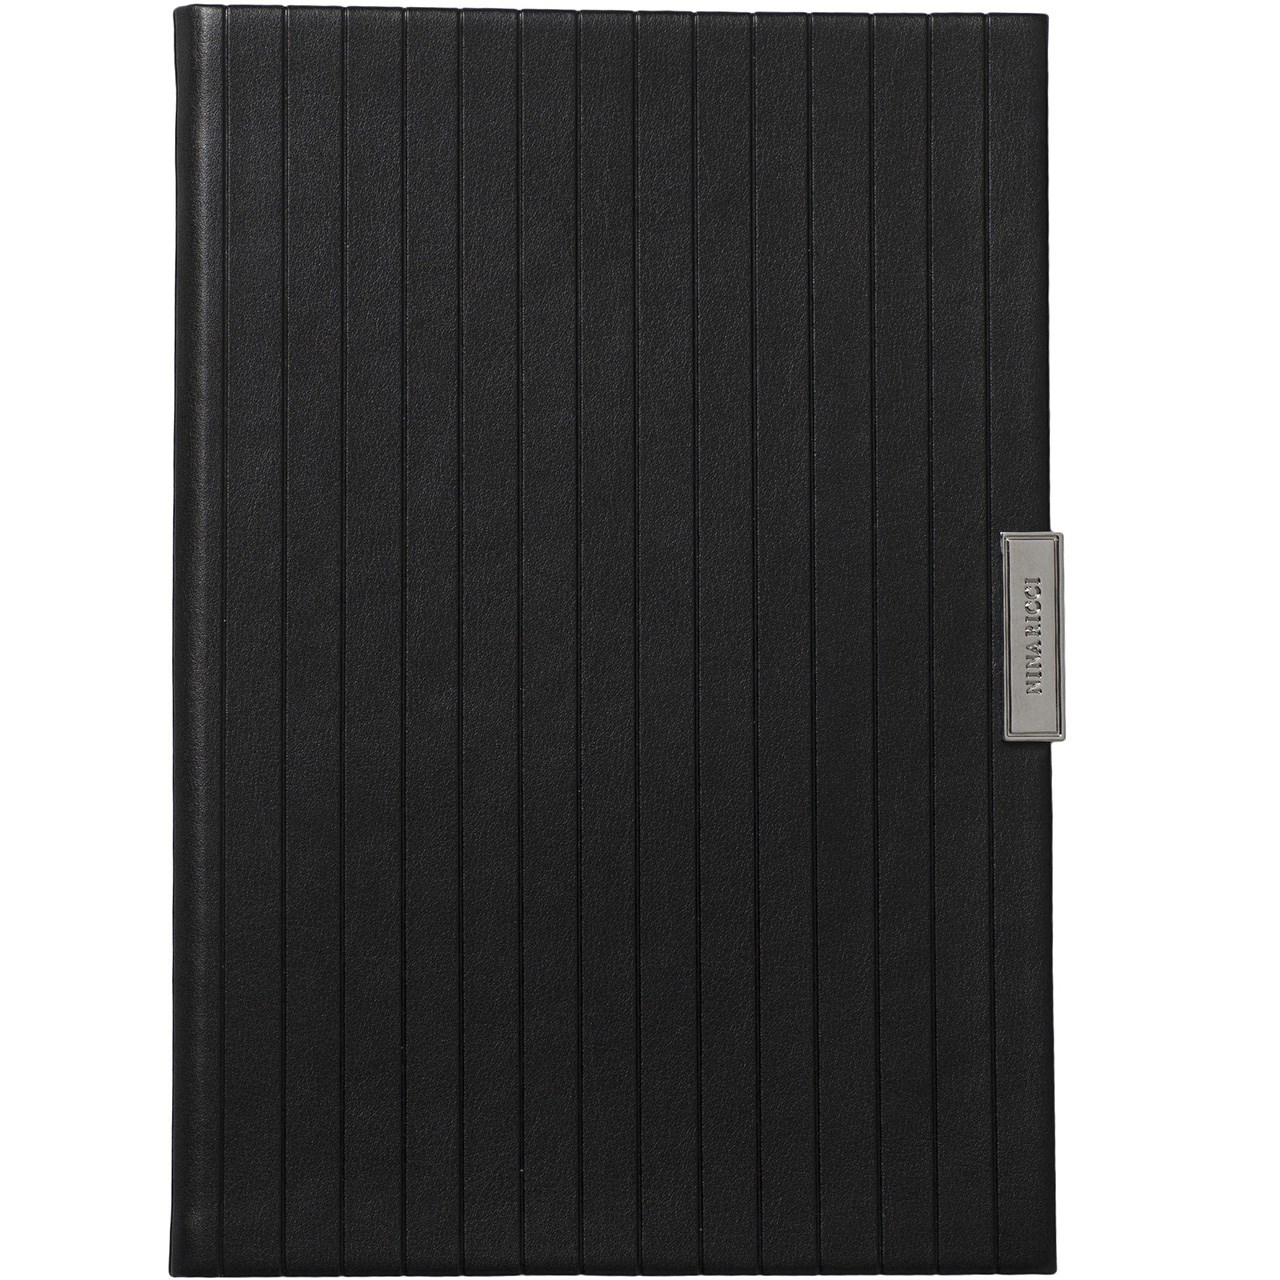 دفتر یادداشت نینا ریچی مدل Trace Noir - سایز A5